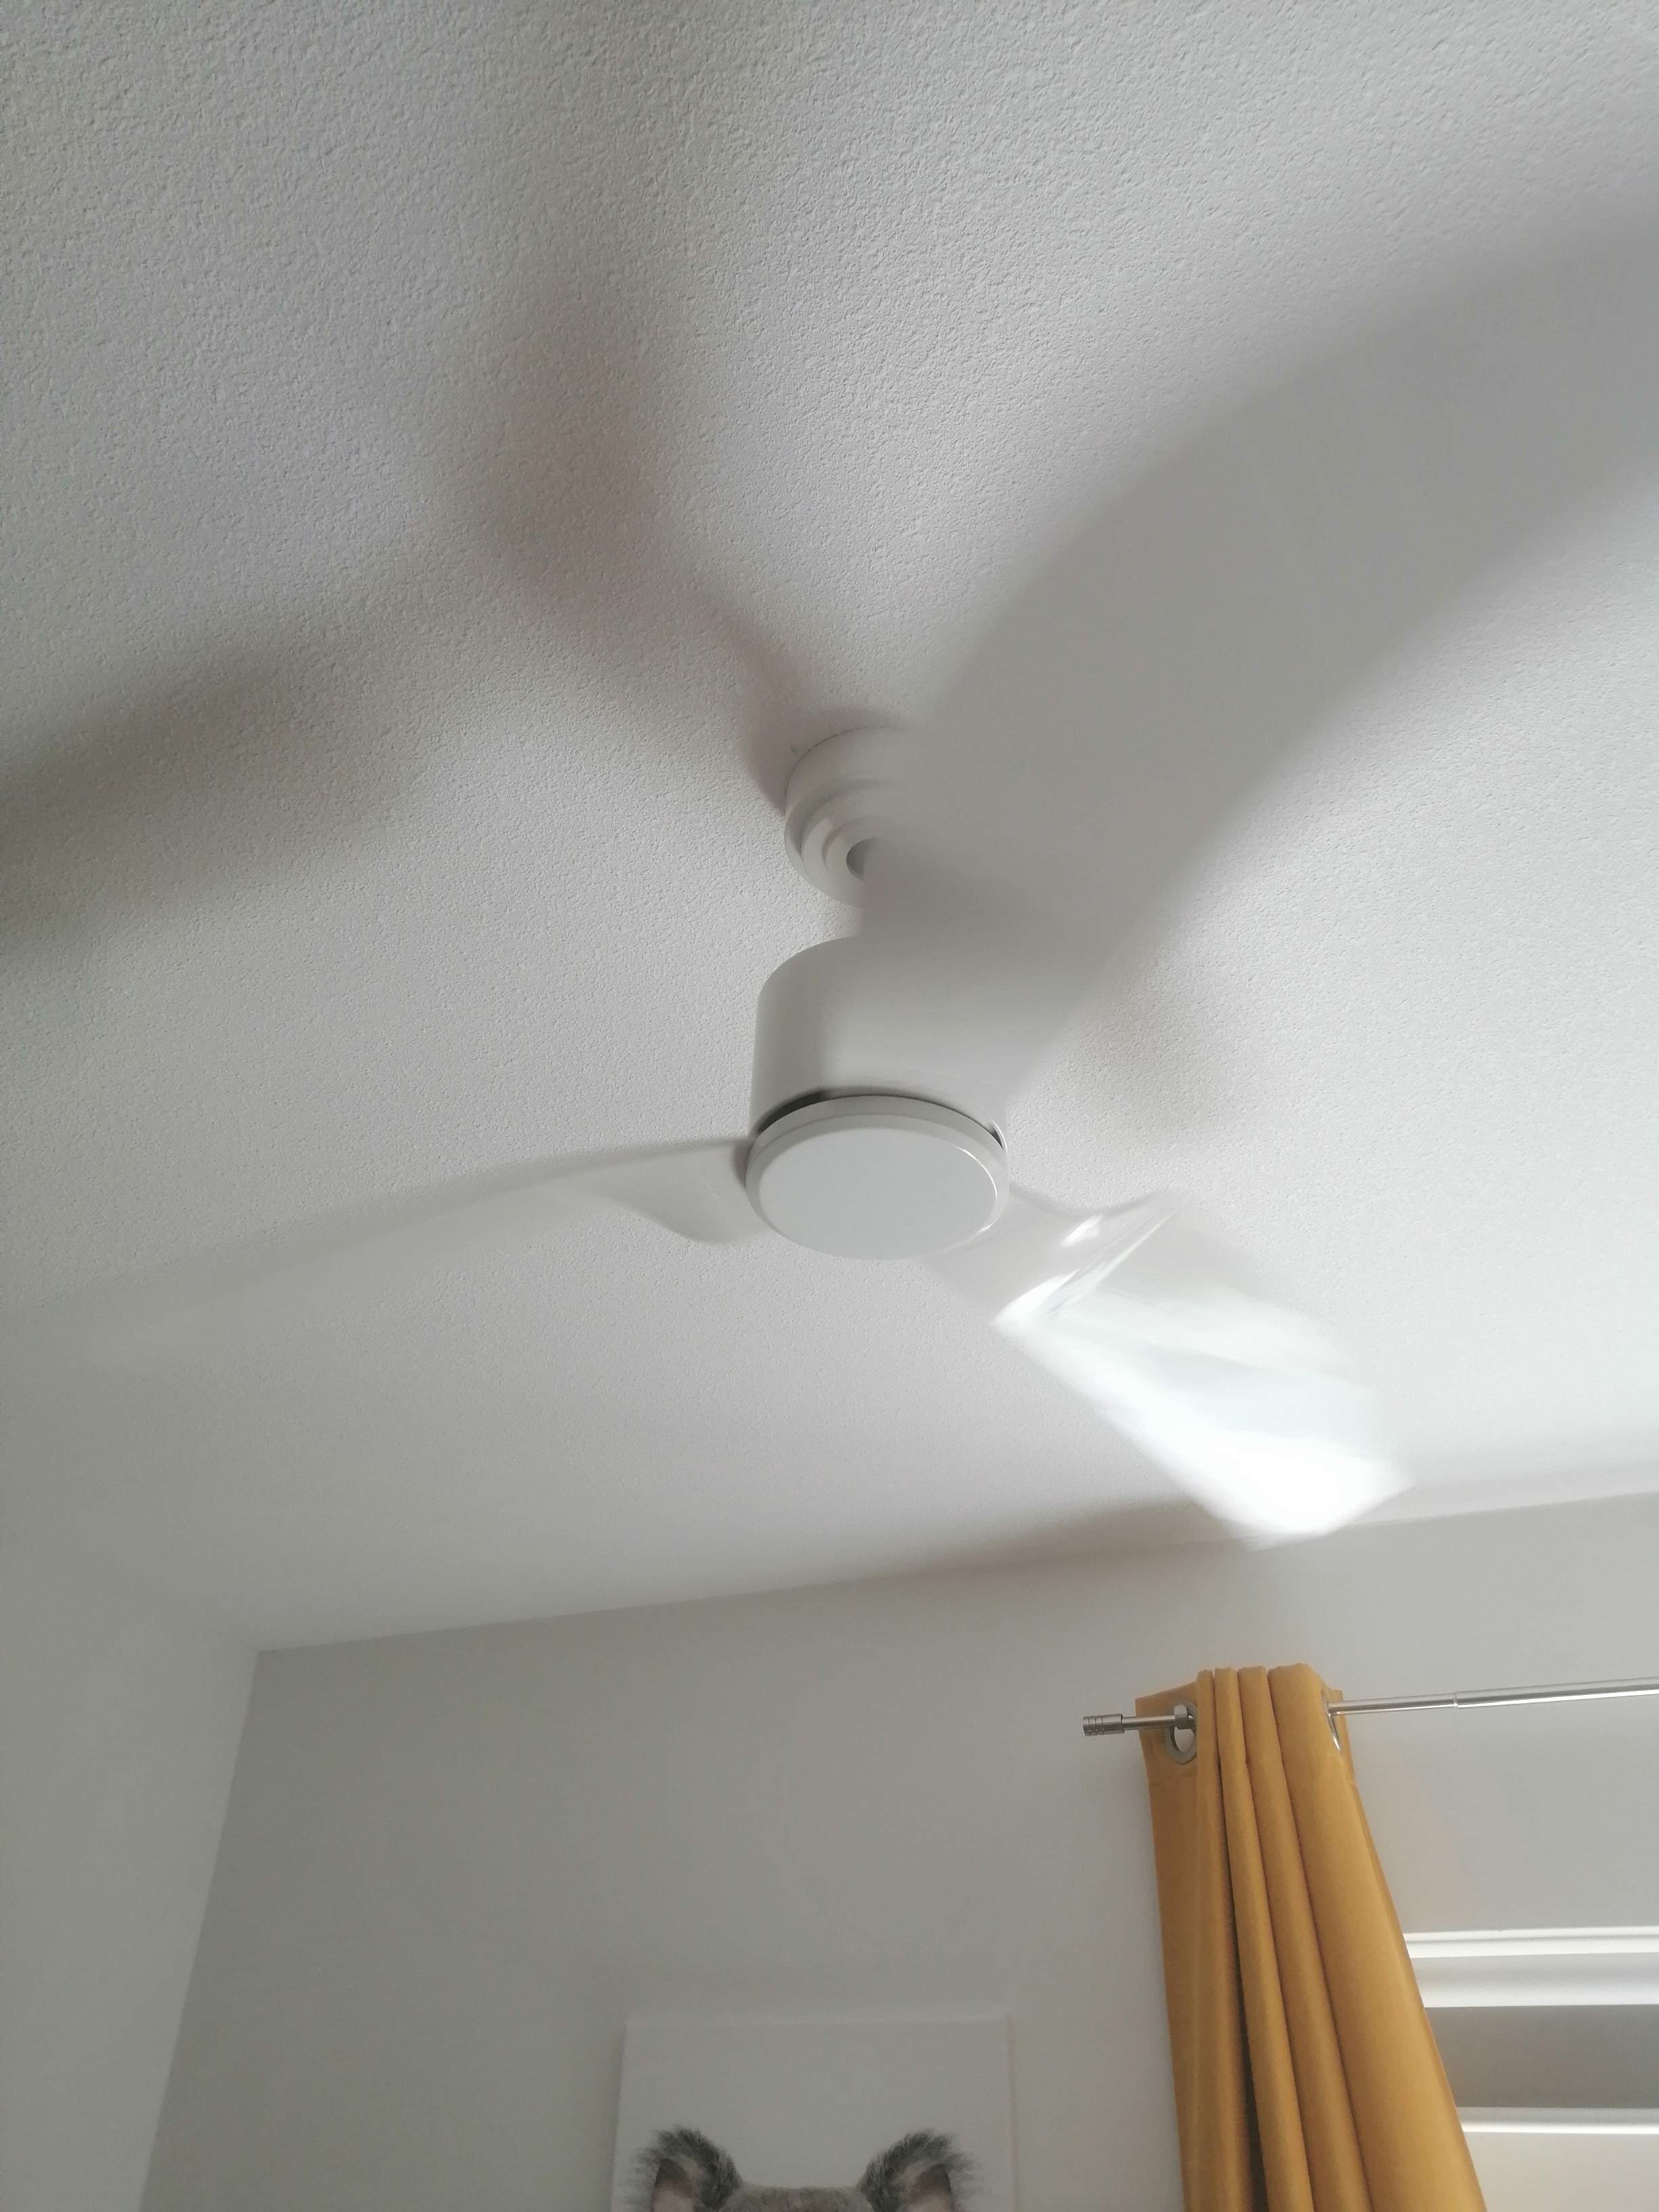 Hete zomer l Installatie plafond ventilator is een oplossing